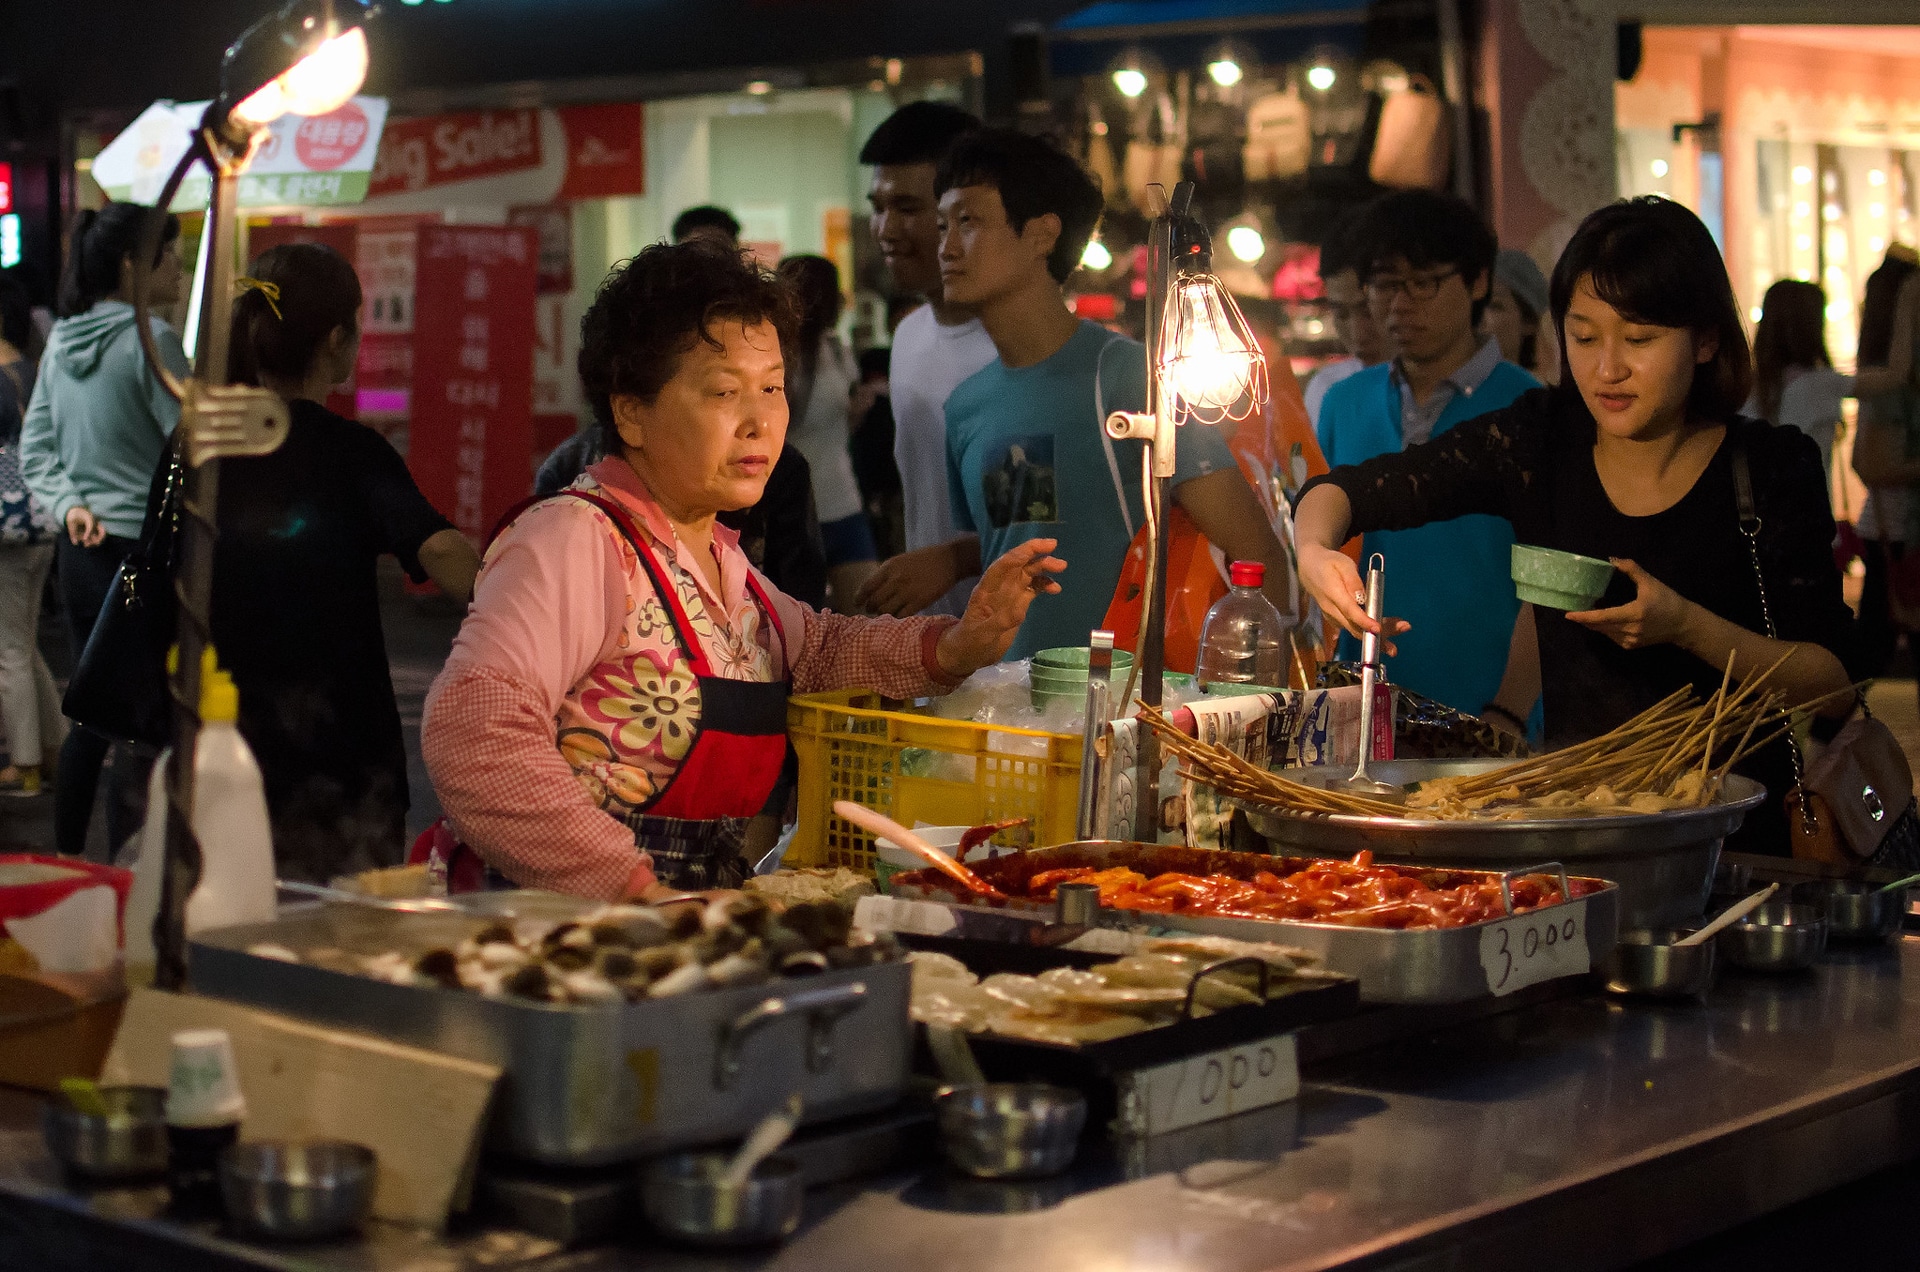 Vendeurs de nourriture à Séoul © 5oulscape